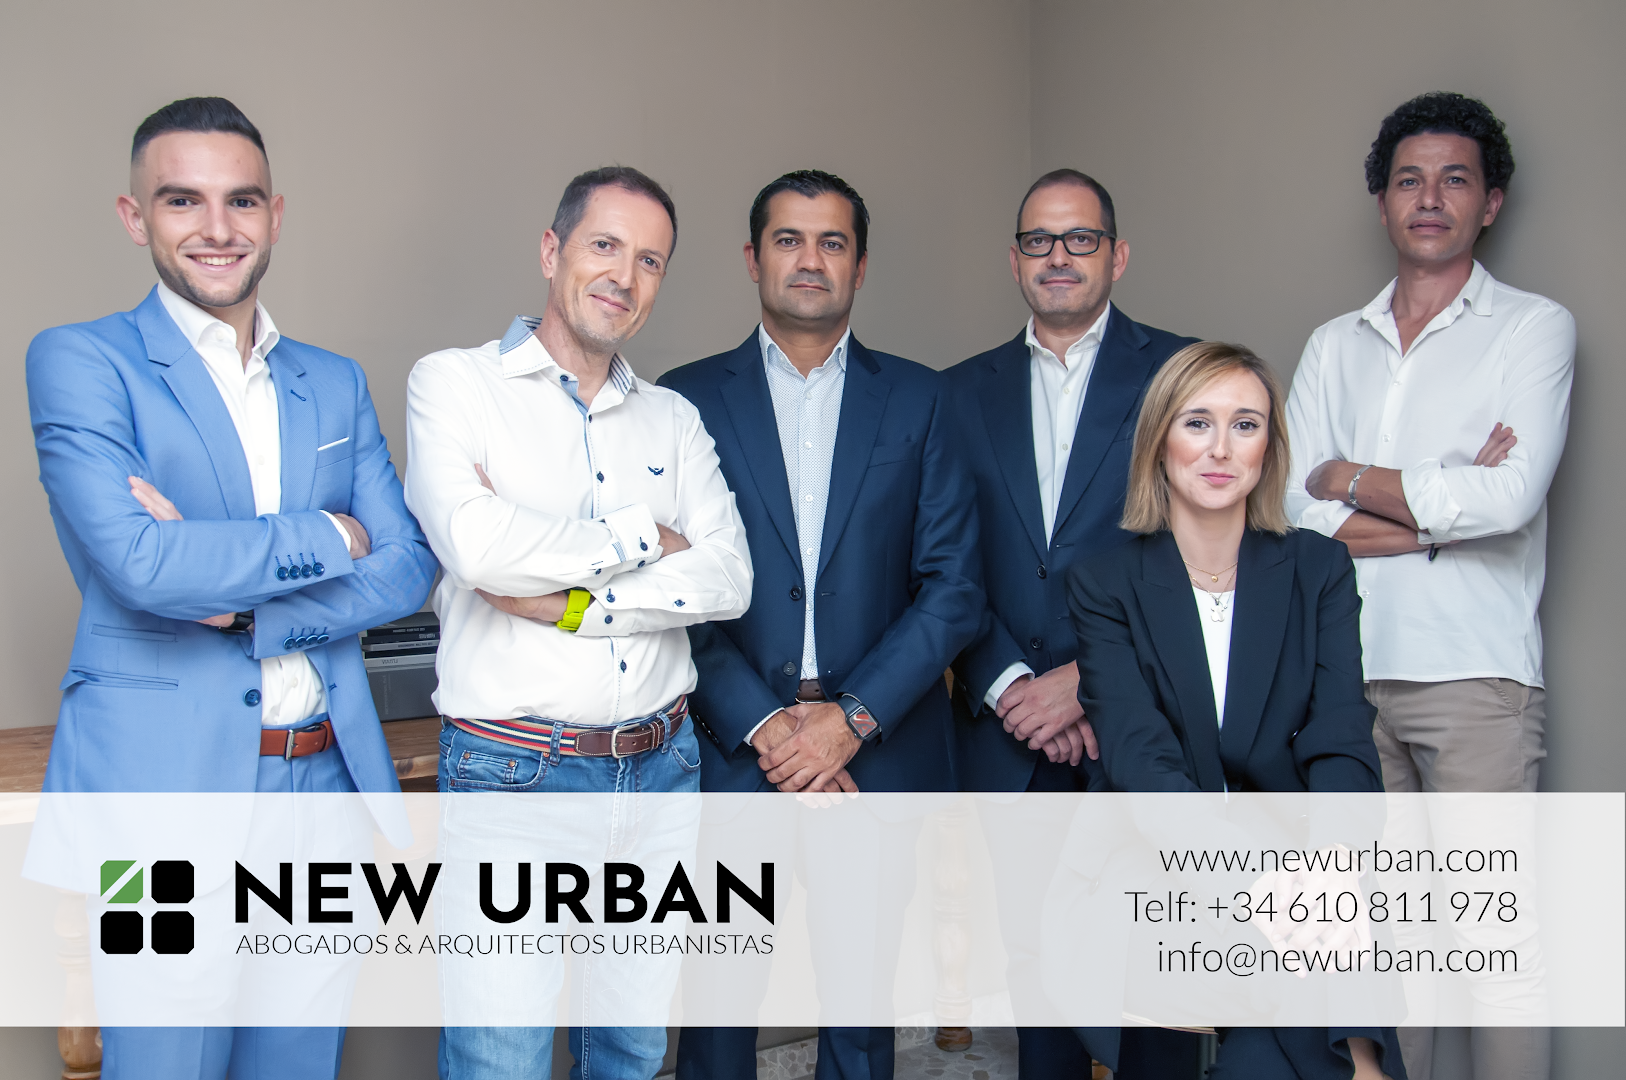 NewUrban - Abogados y arquitectos urbanistas en Málaga